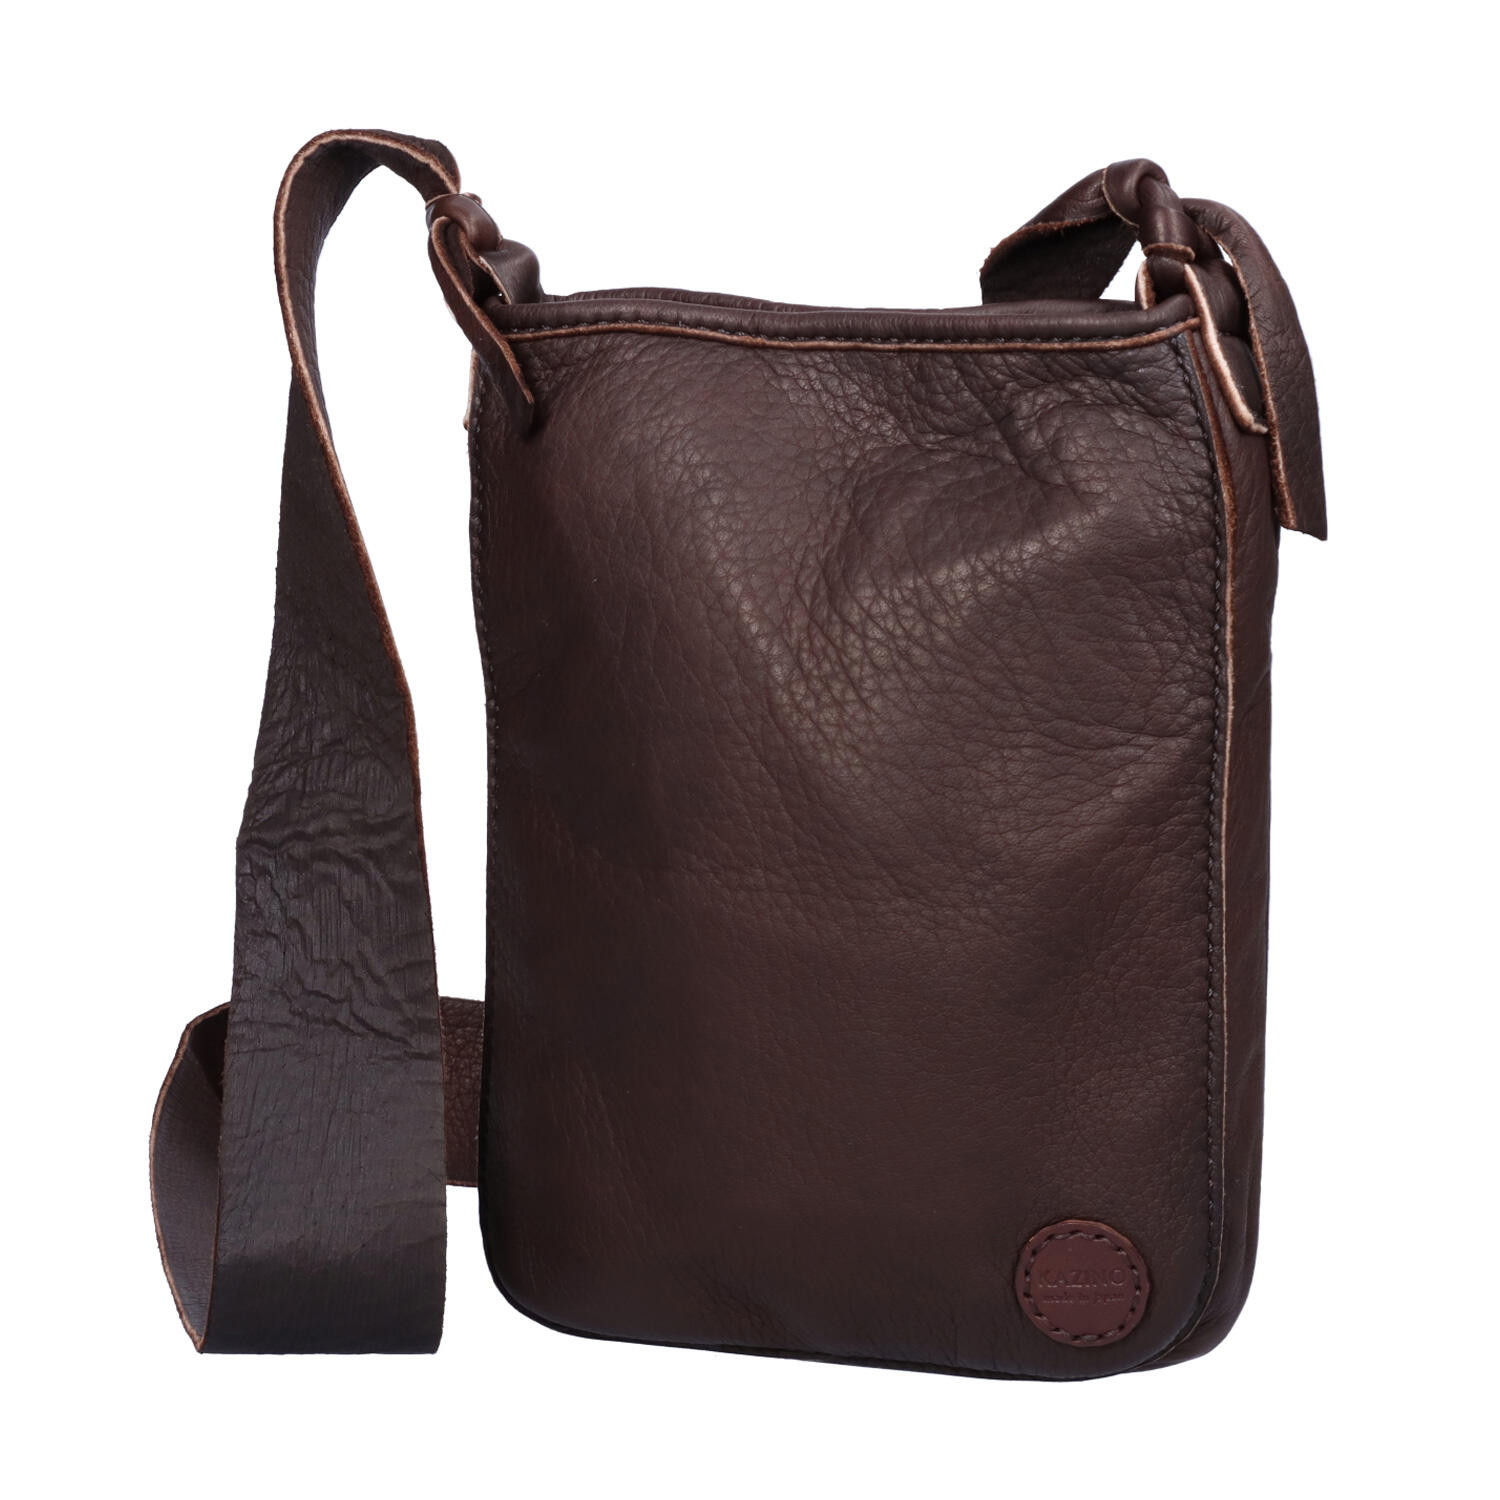 総手縫い 鹿革 縦型 斜めがけミニバッグ | 株式会社 KAZINO leather 